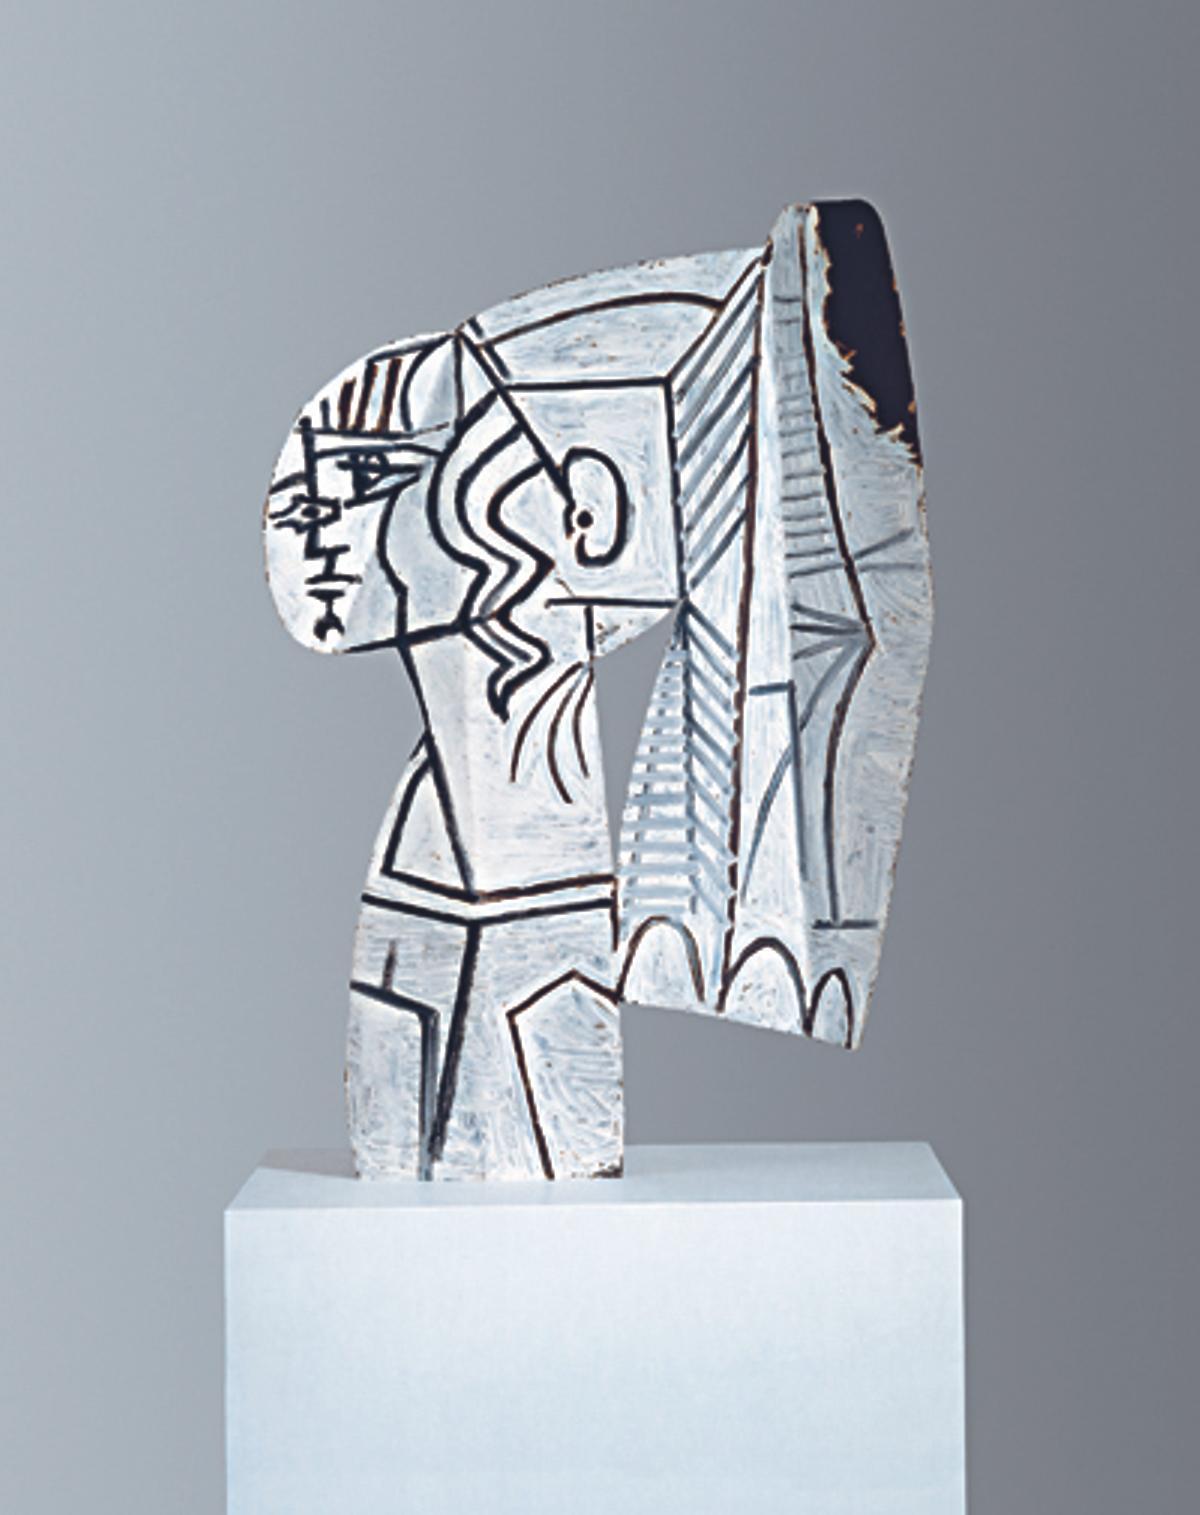 'Sylvette' (1954), de Pablo Picasso. Fondation Hubert Looser, Zurich